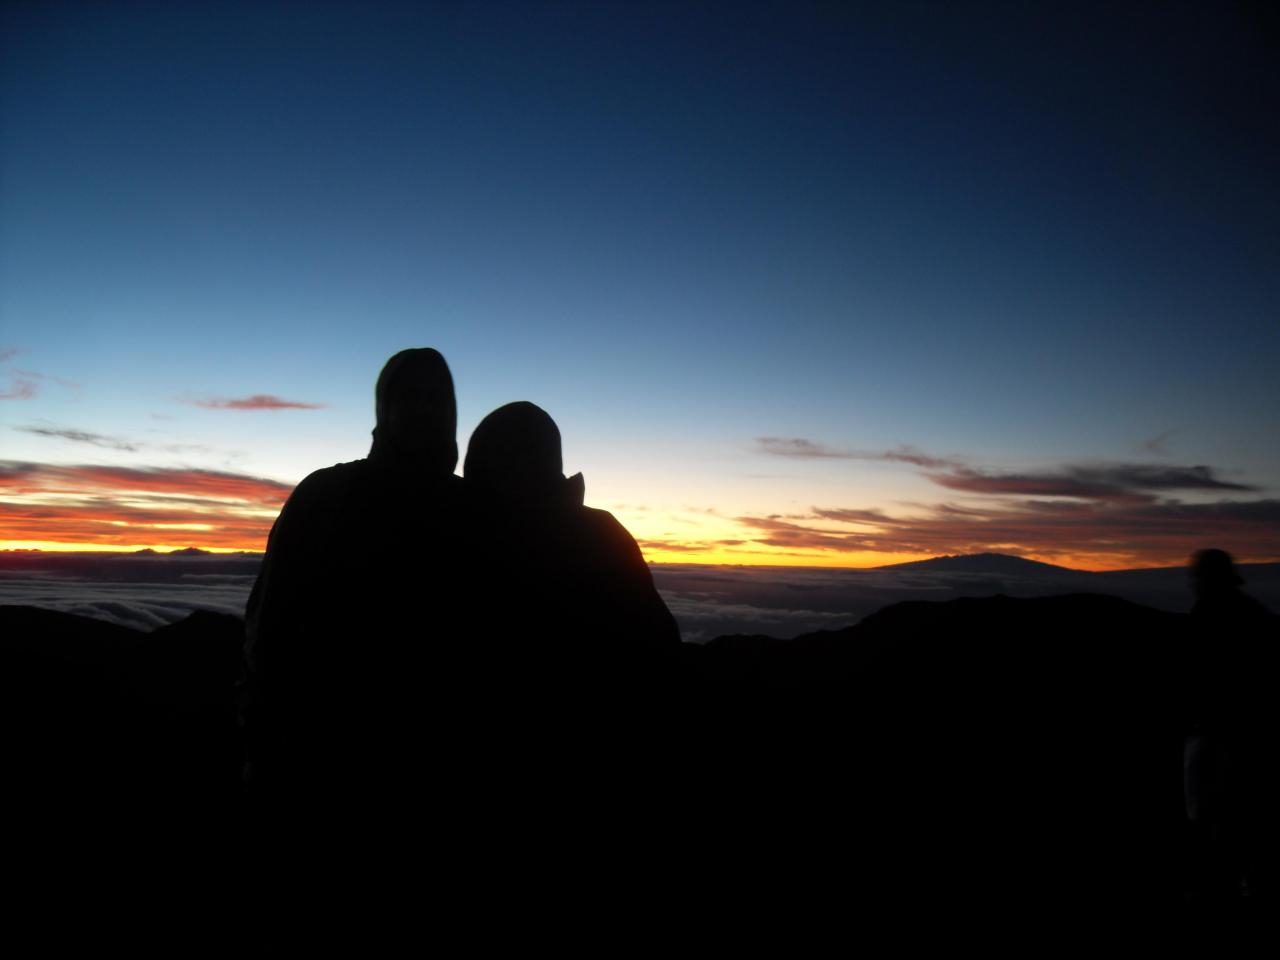 Me and my fiance on Haleakala volcano